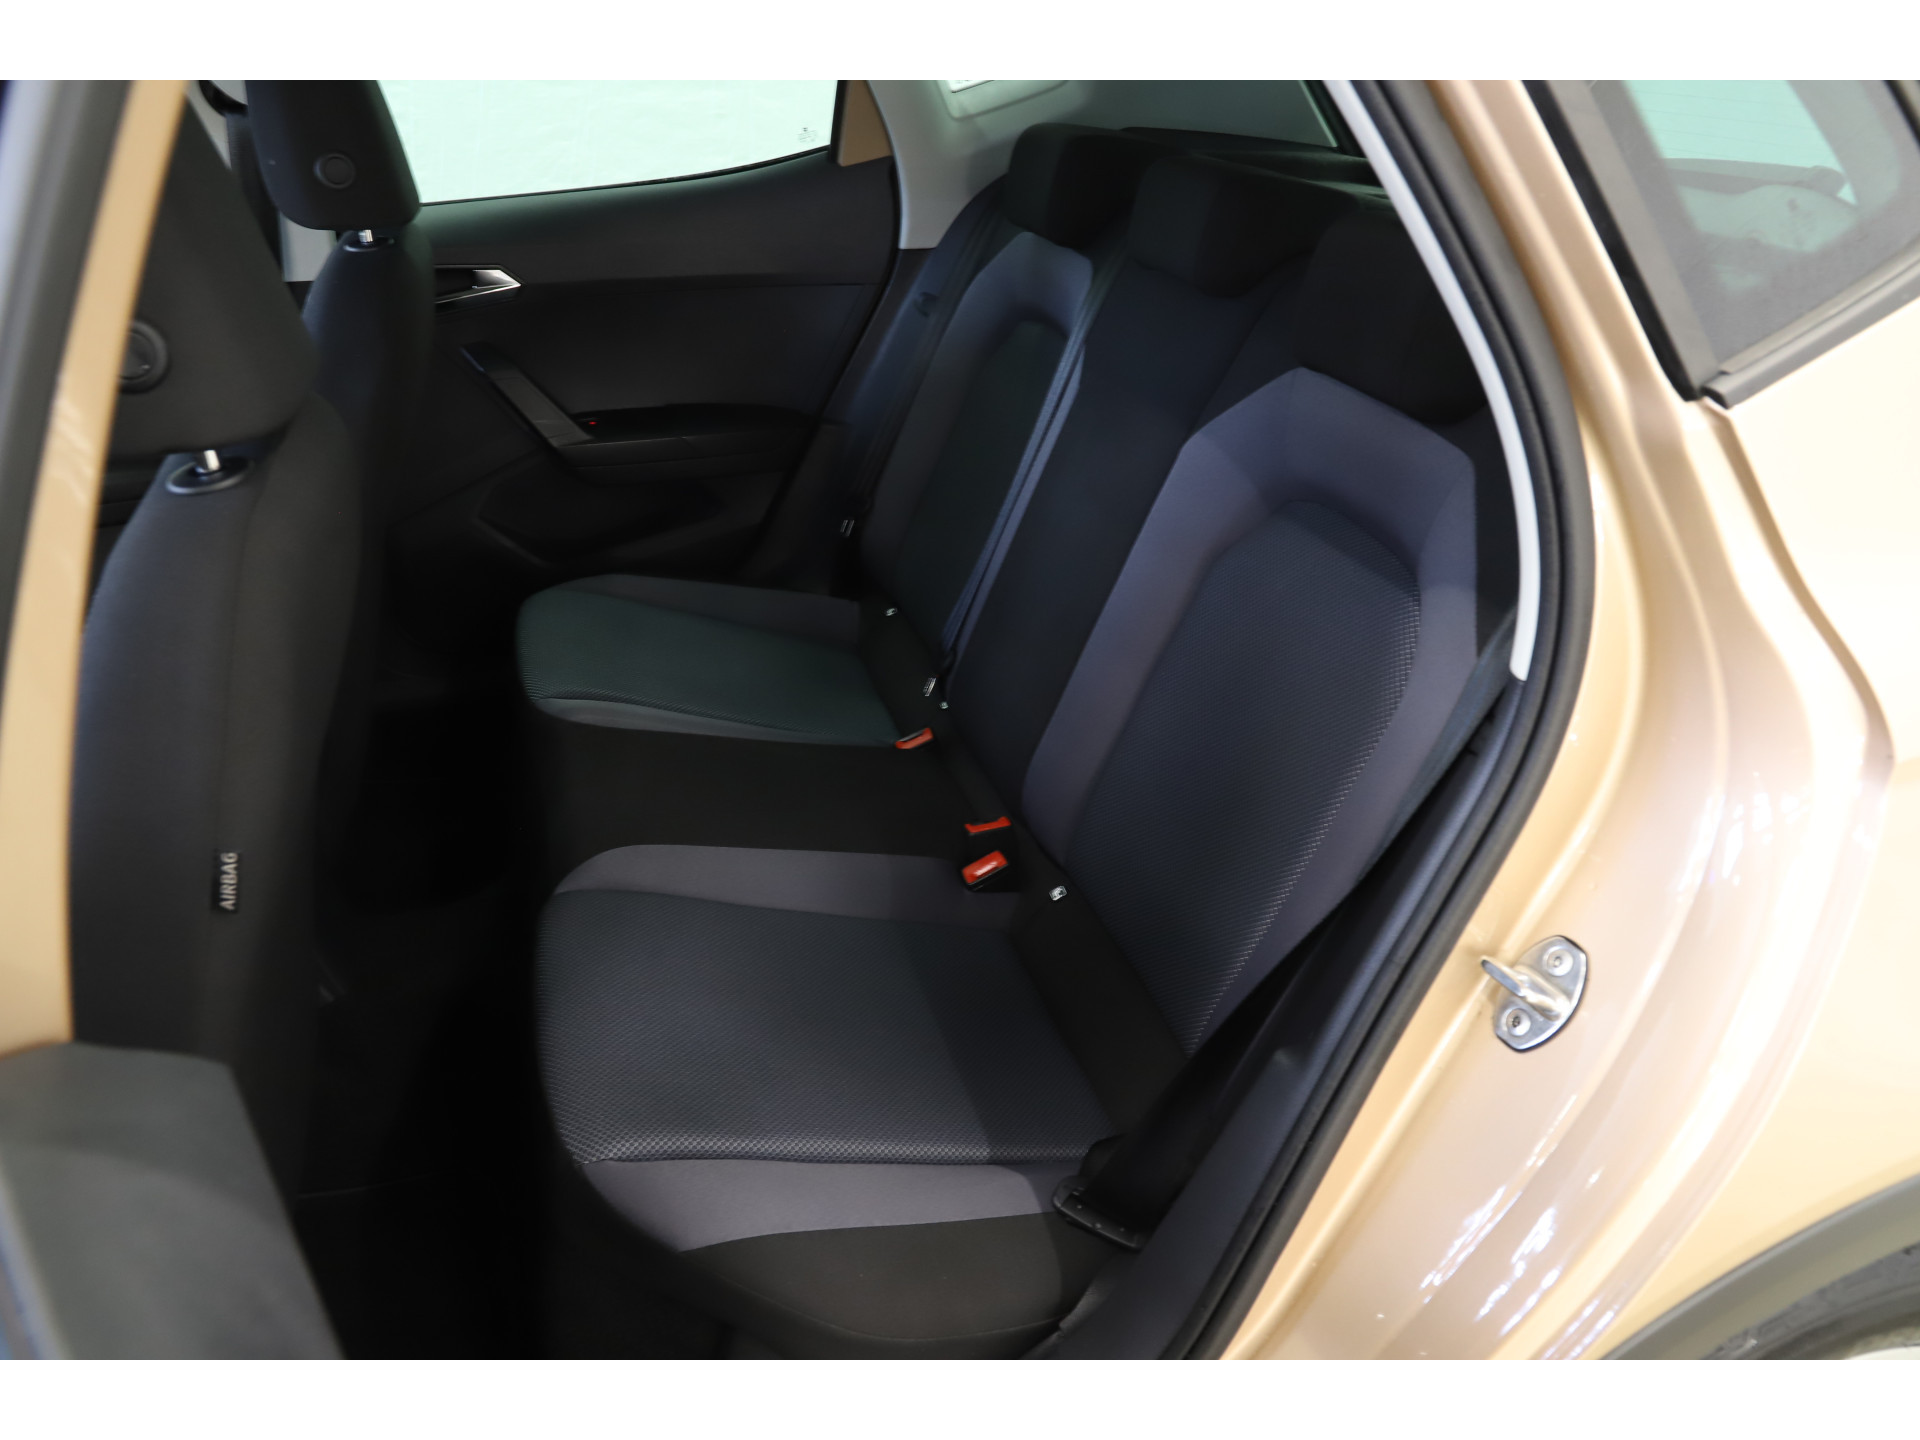 SEAT - Arona 1.0 TSI 95pk Style Business Intense - 2018